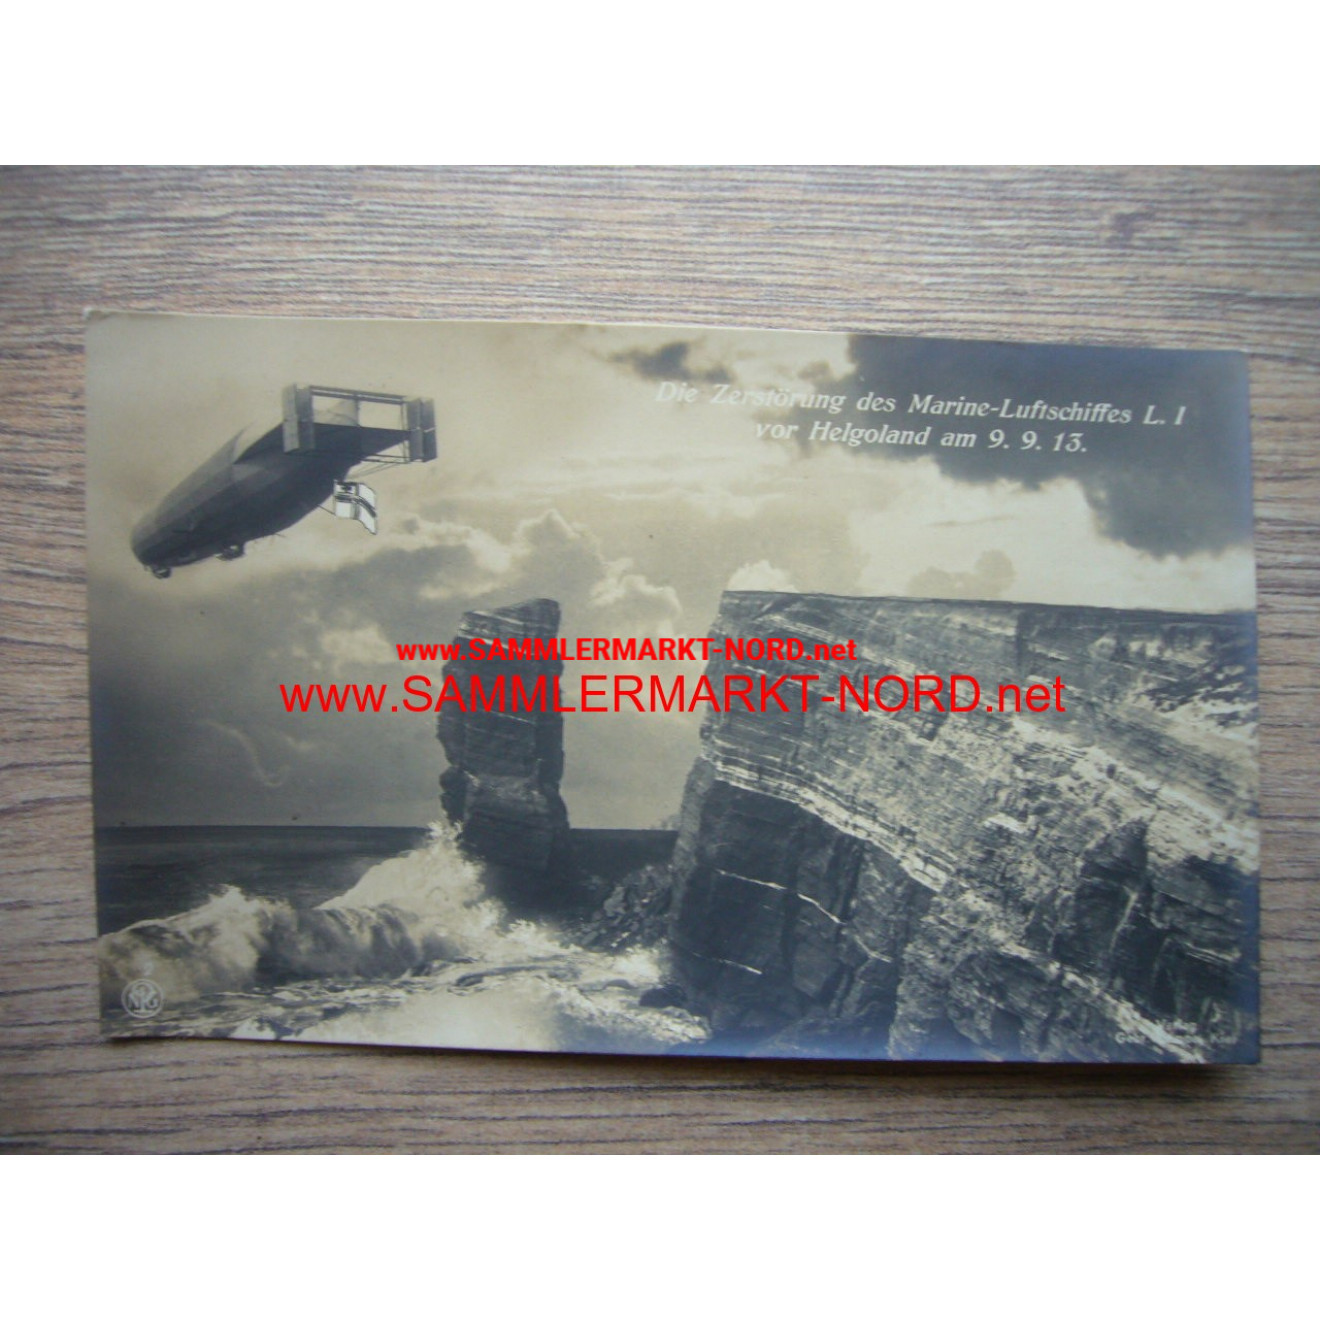 Helgoland - Zerstörung des Marine-Luftschiff L. I - Postkarte